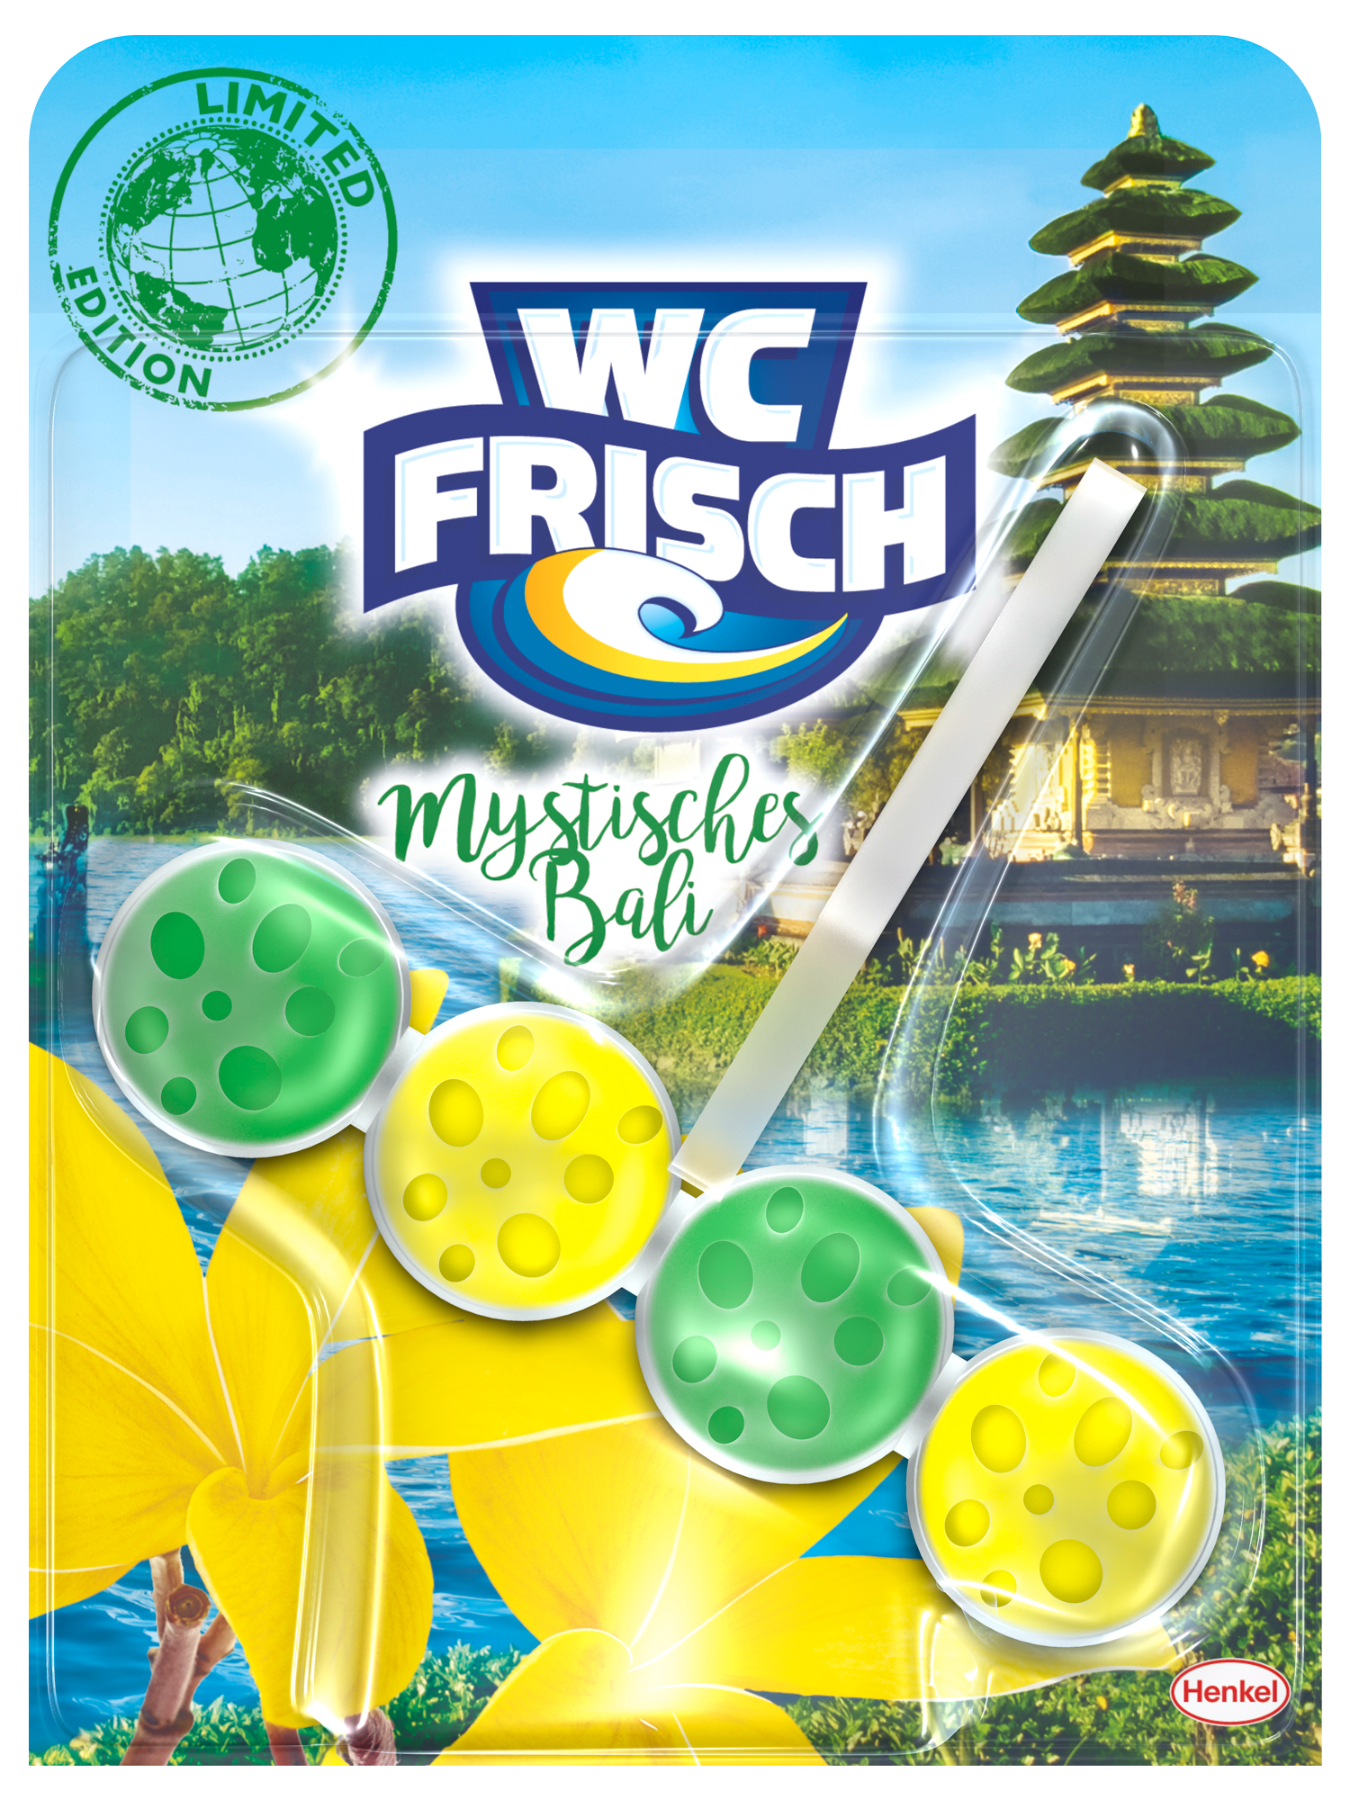 Die neue WC Frisch Limited Edition mit der Version Mystisches Bali 